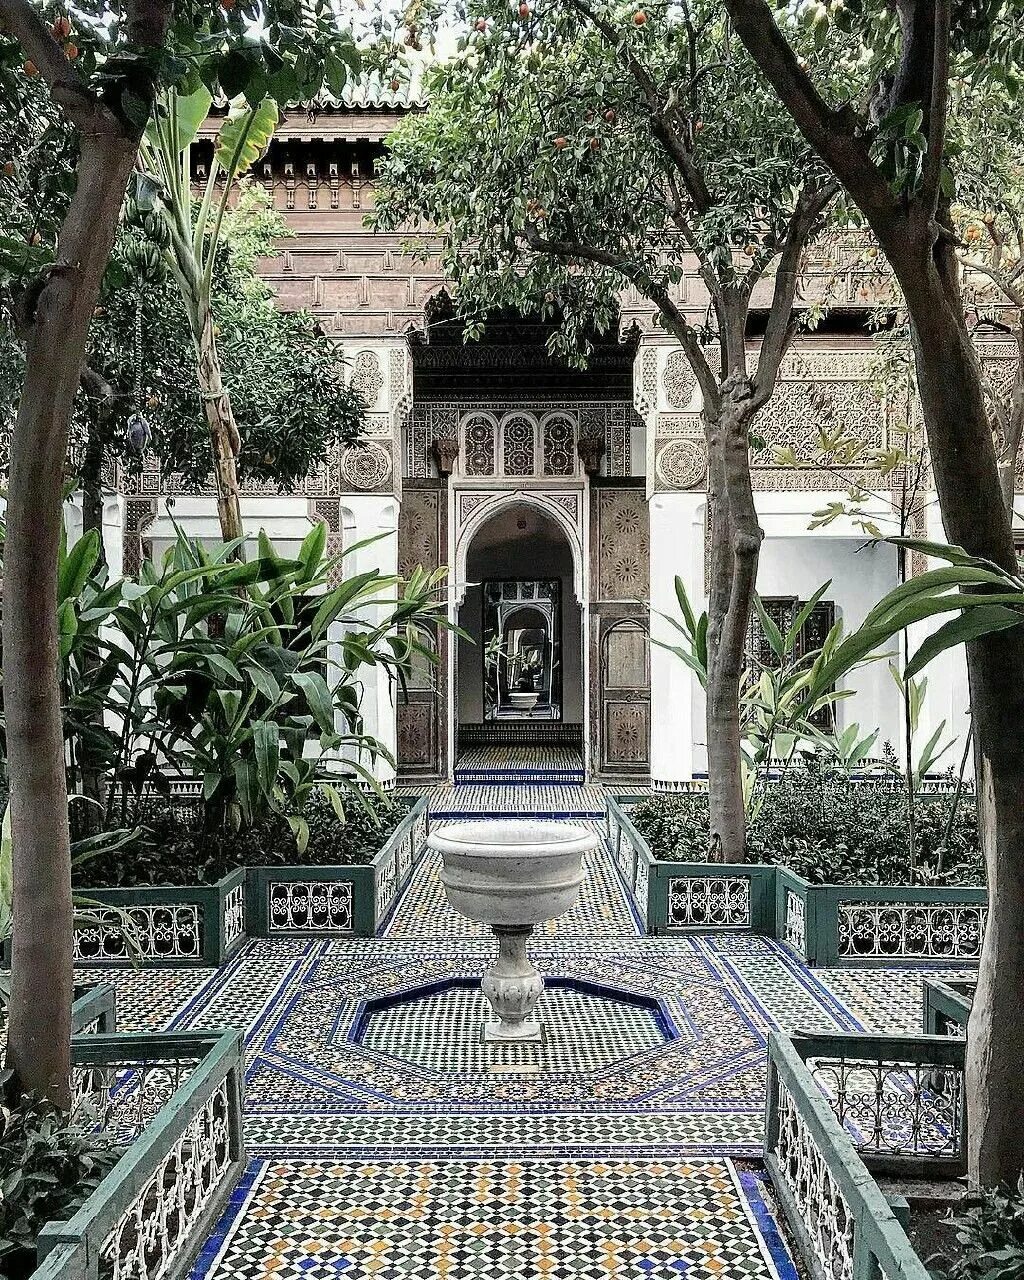 Мусульманский сад. Мавританский стиль в Марокко. Мавританская архитектура Марокко. Испано мавританский стиль СКДА. Арабский дворец Марокко.